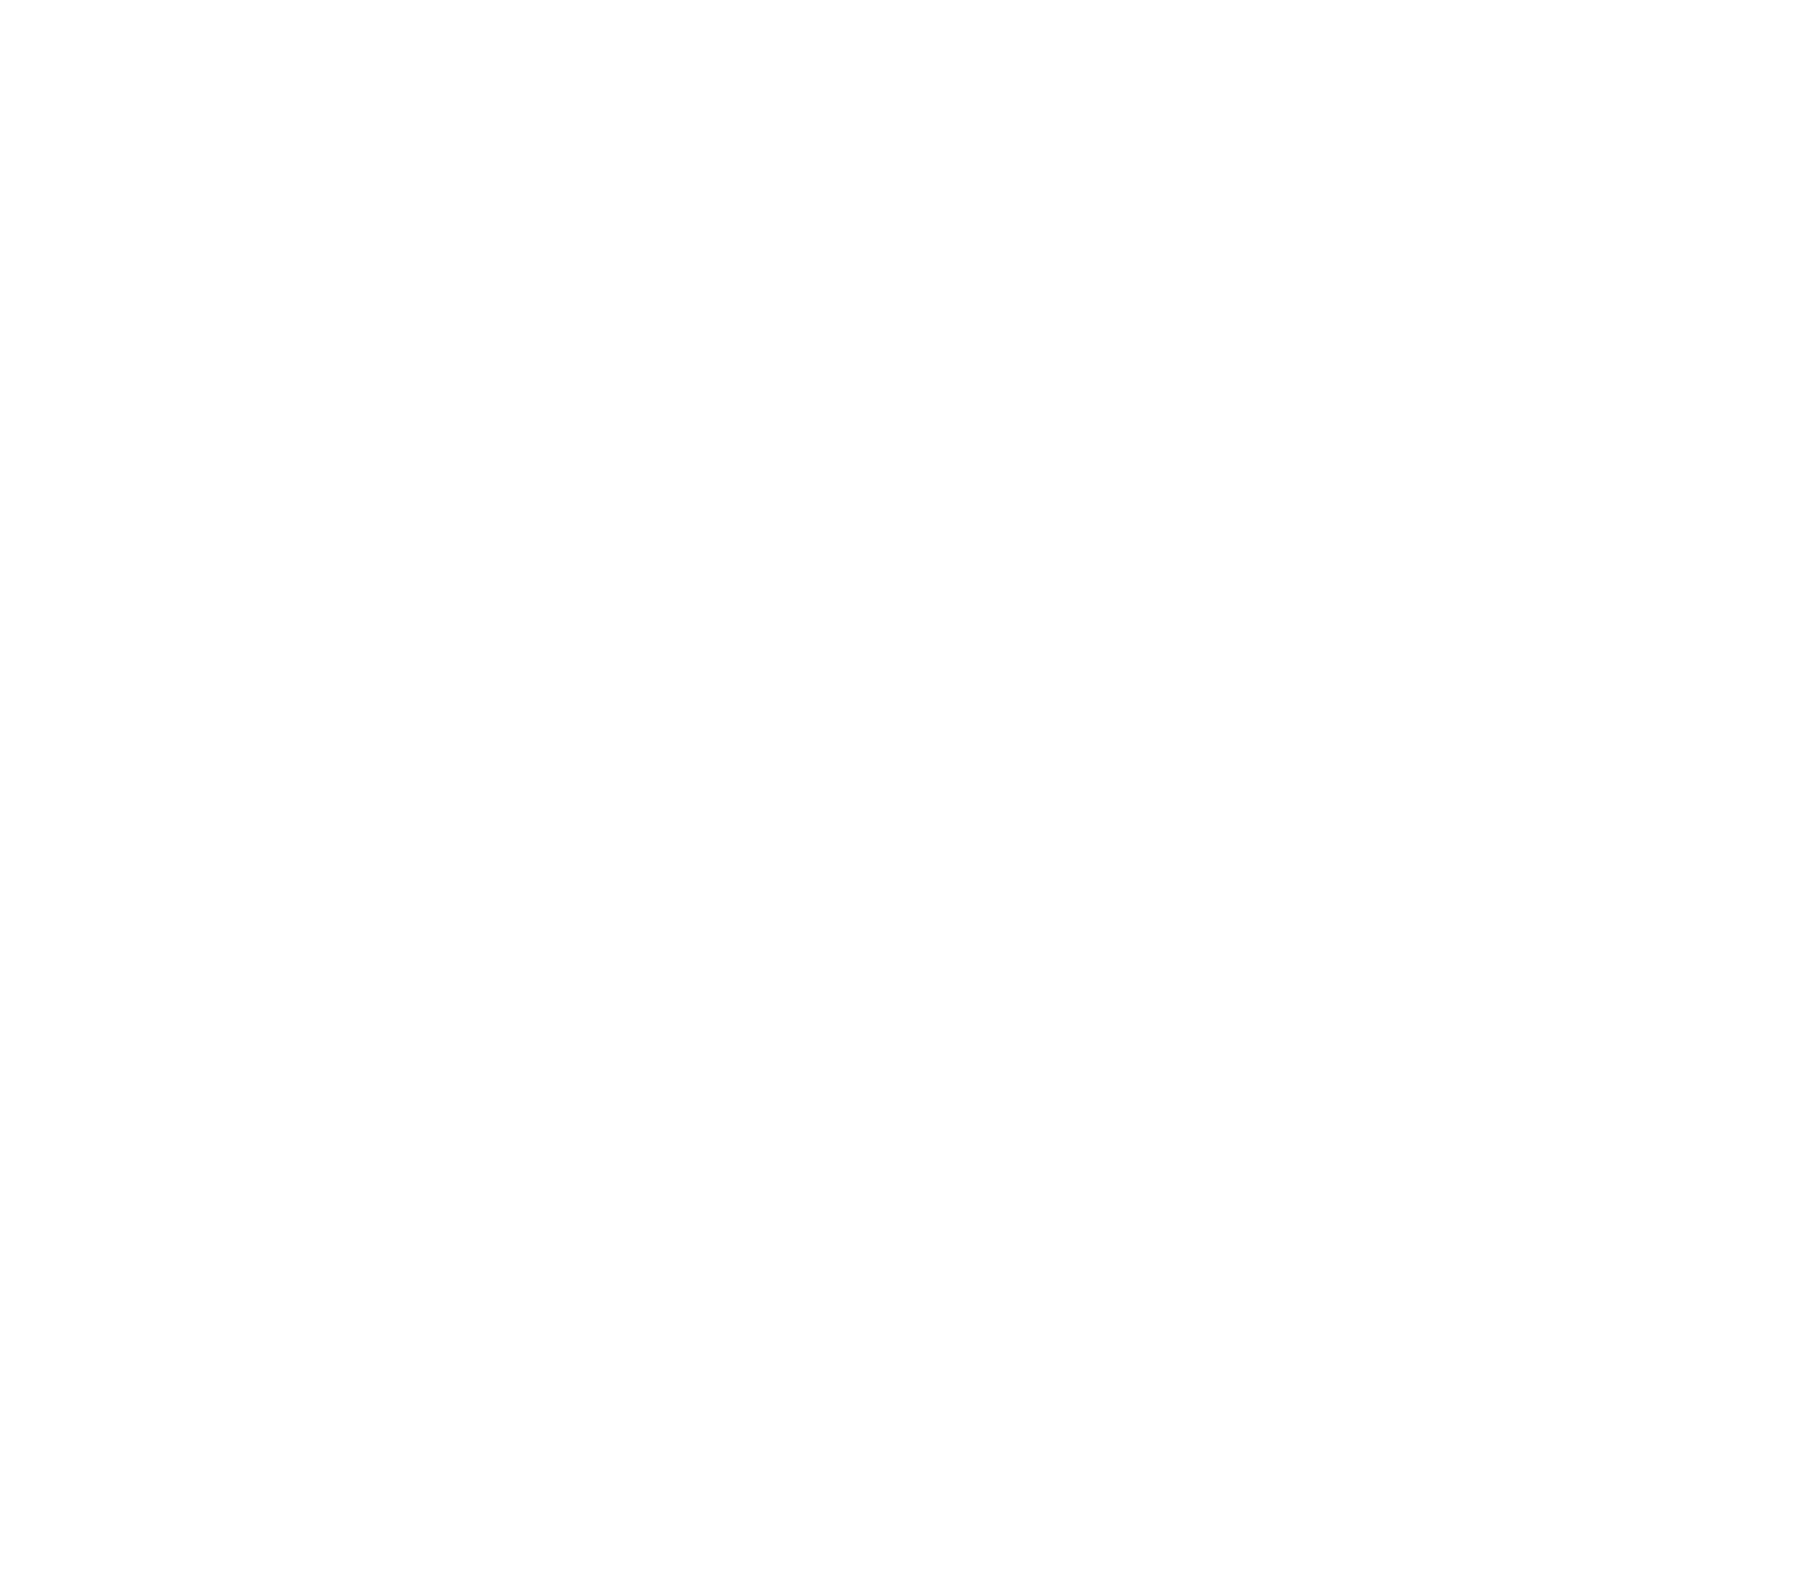 sbs-logo-negative